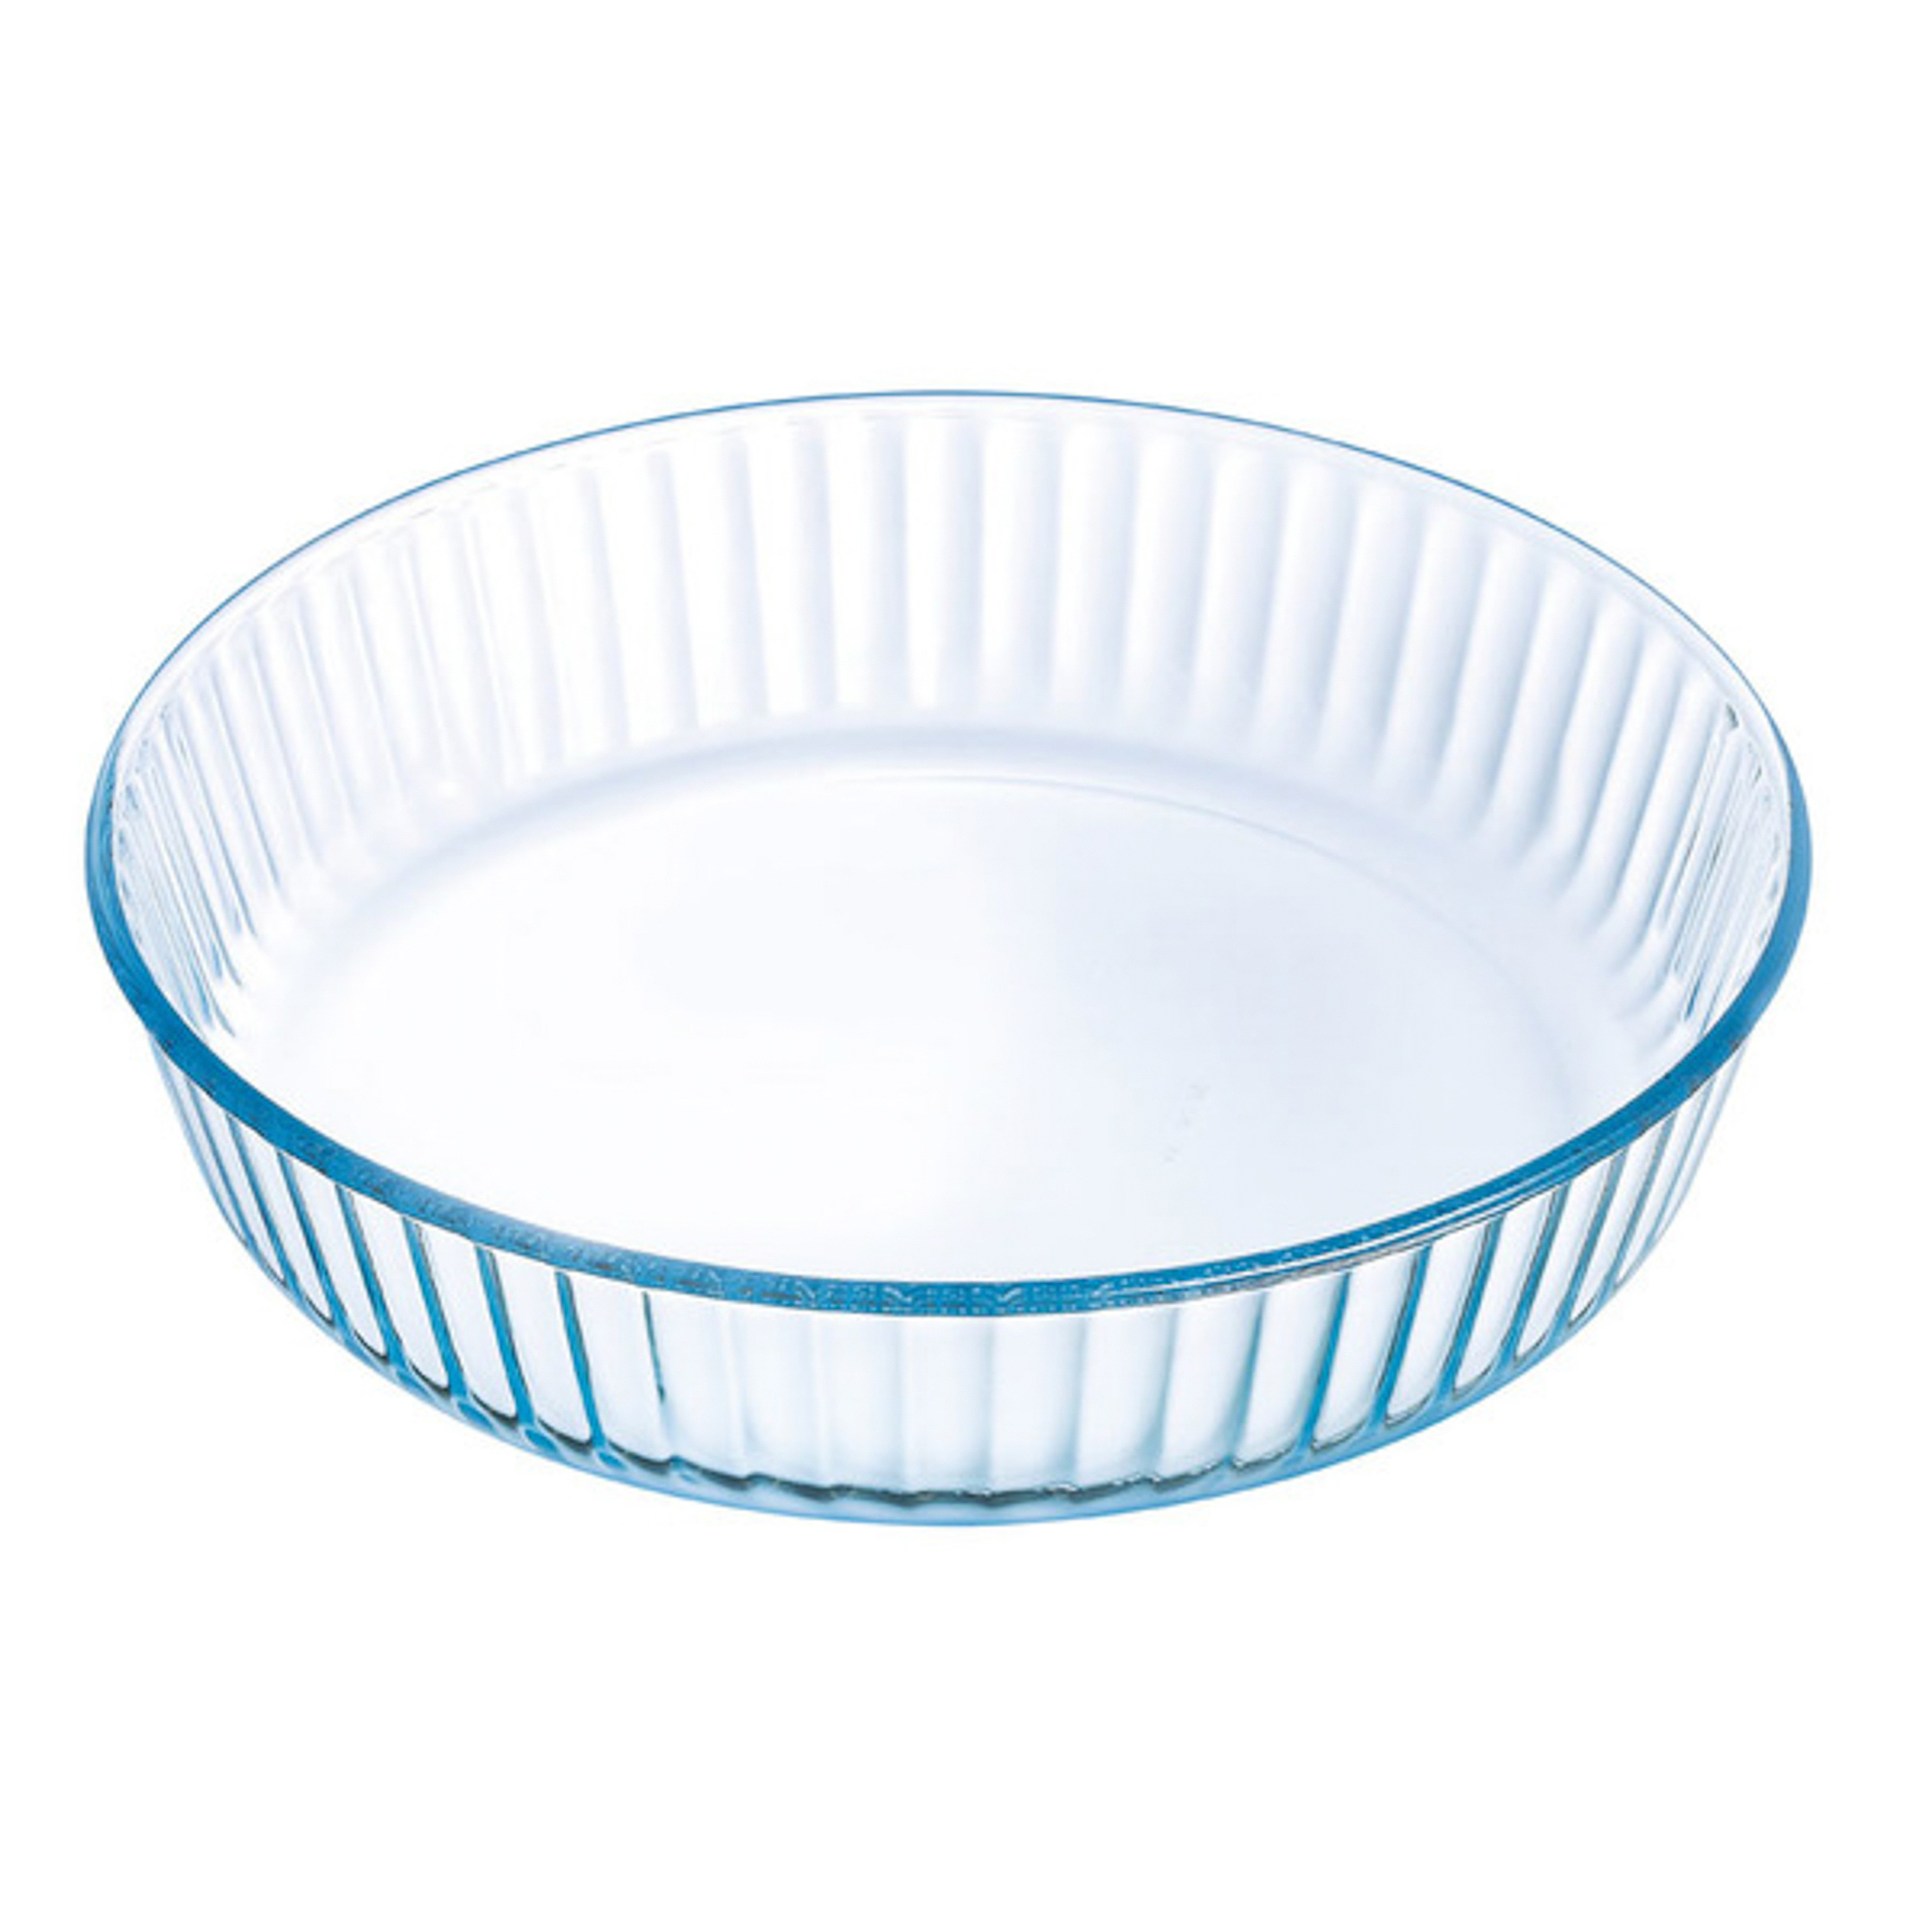 Форма для выпечки Pyrex Bake & Enjoy Glass Круглая 26 см (818B000/R046/6146) выпечка и приготовление guardini форма для выпечки круглая разъемная со сменным дном bake natural 26 см